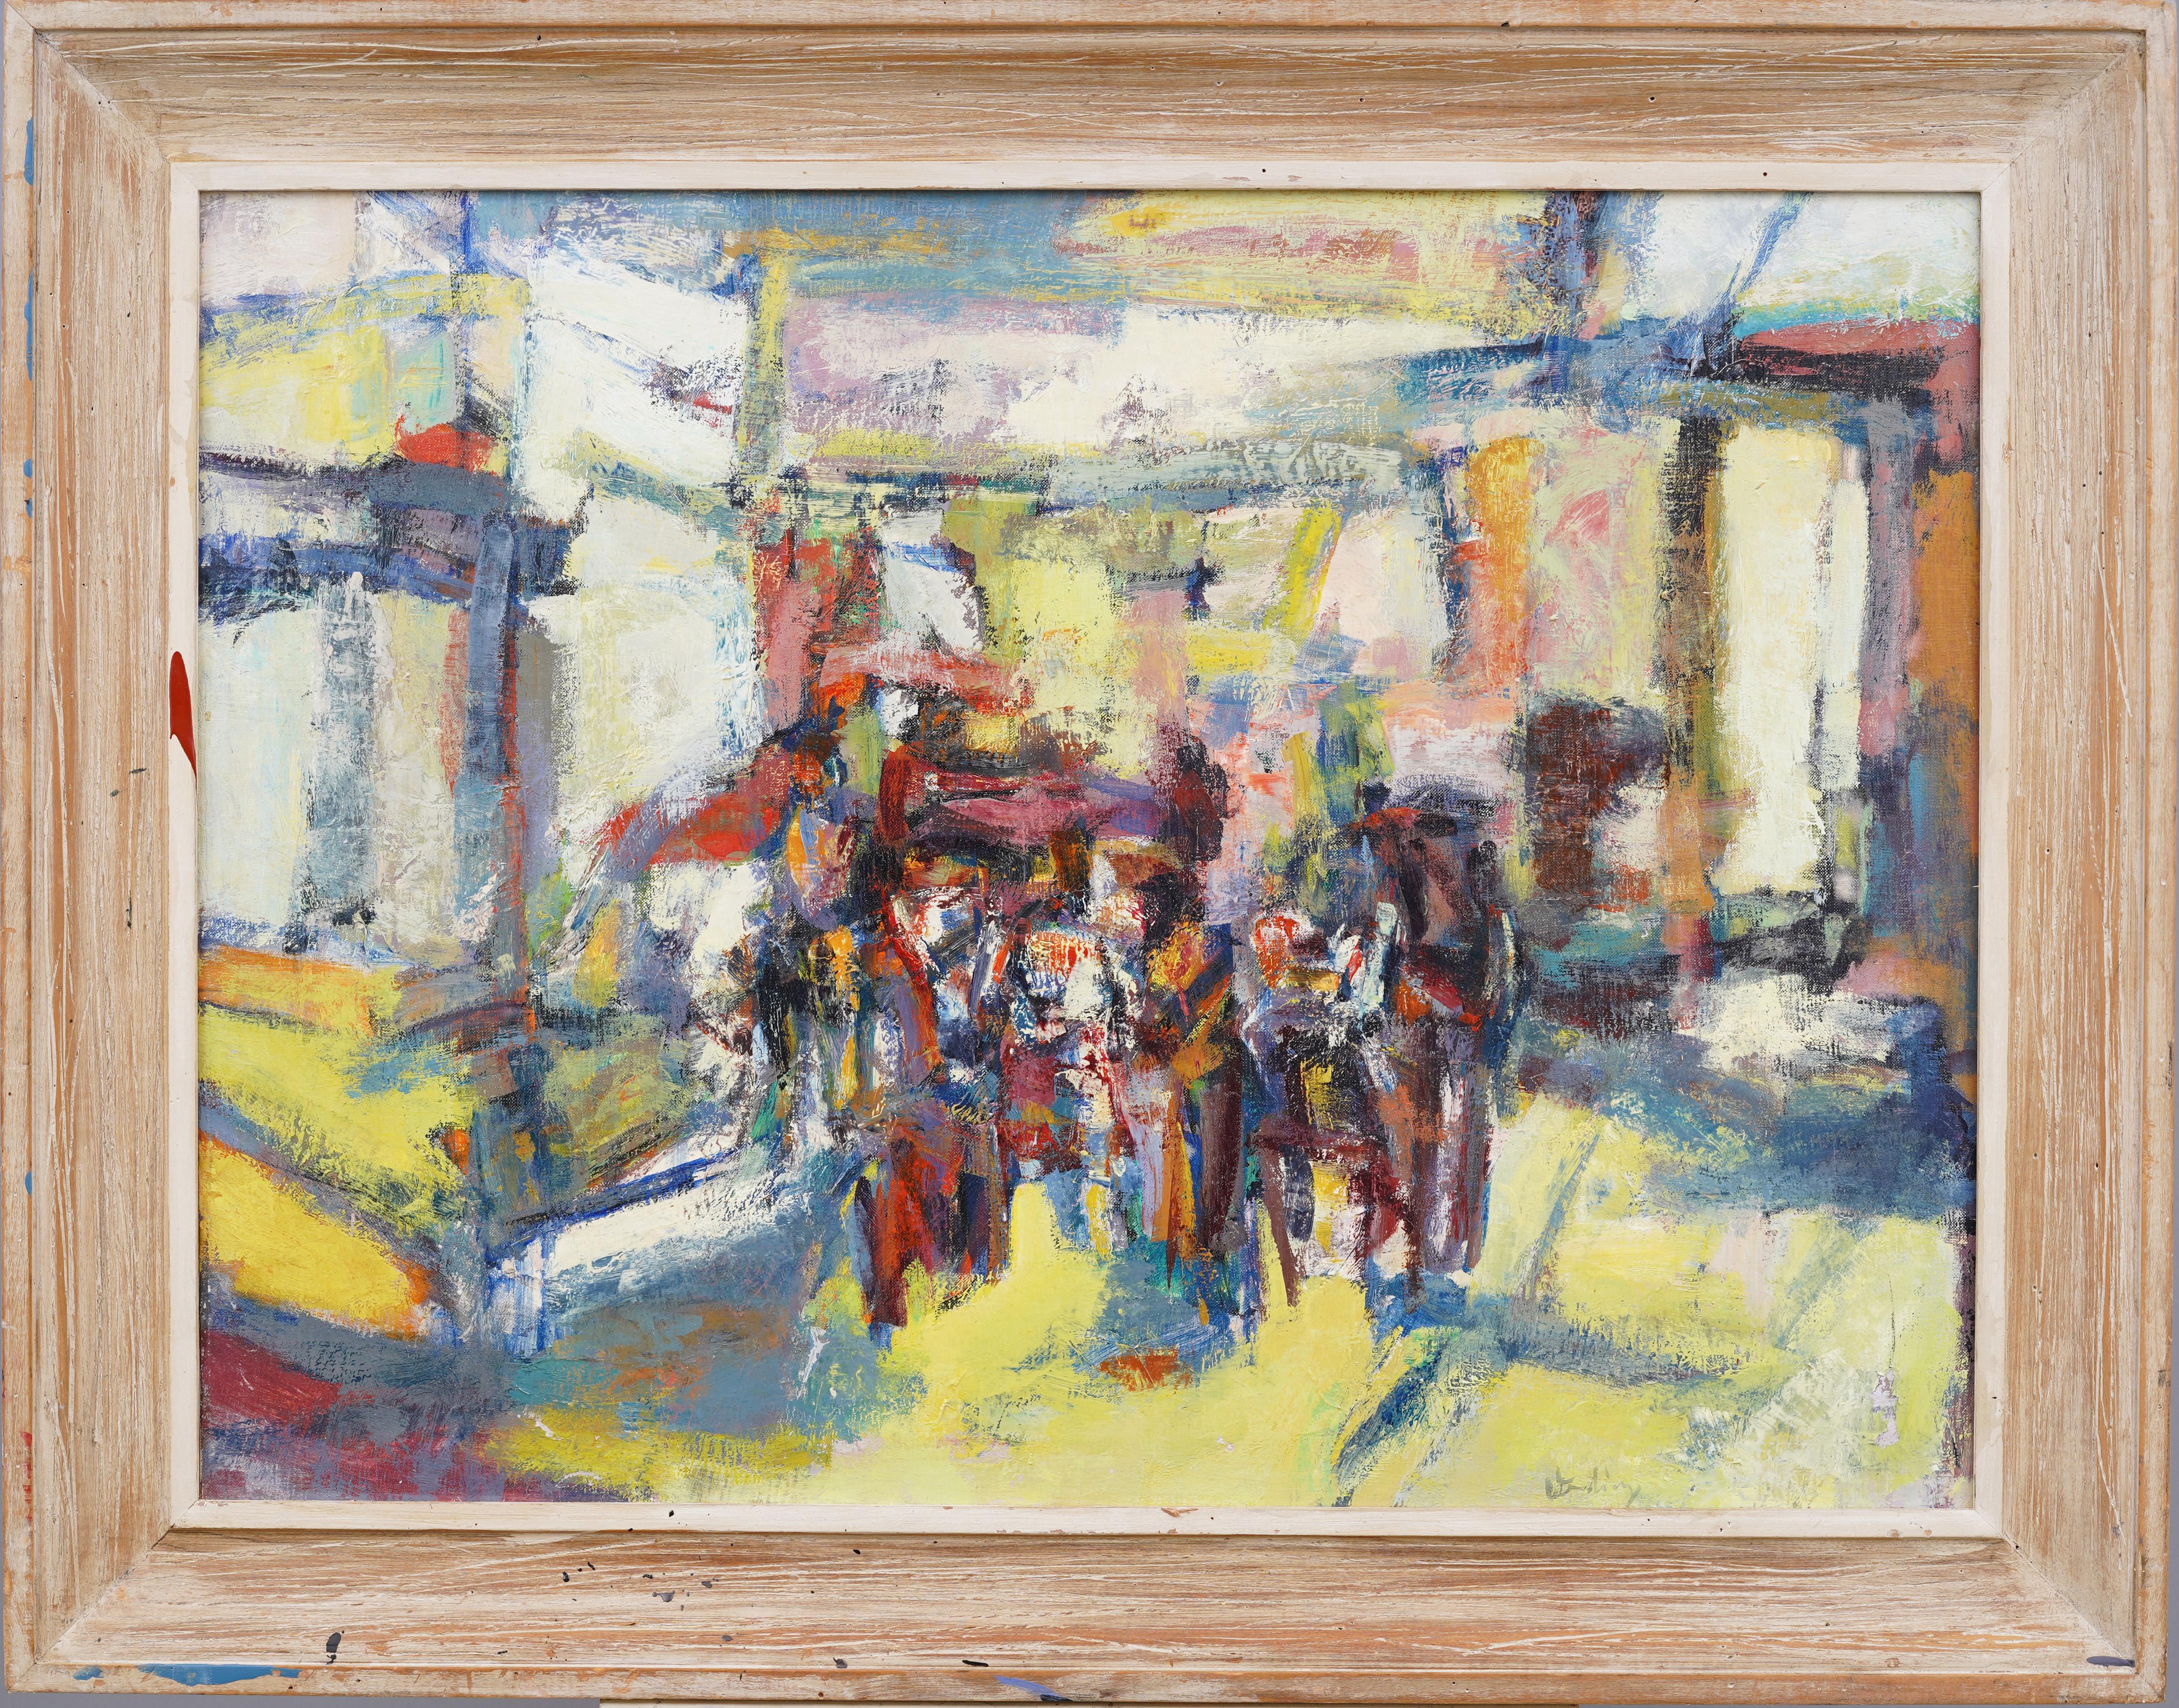 Exhibitierte gerahmte modernistische Straßenszene, signiertes Gemälde, abstrakt-expressionistischer Expressionismus – Painting von Erwin Wending 